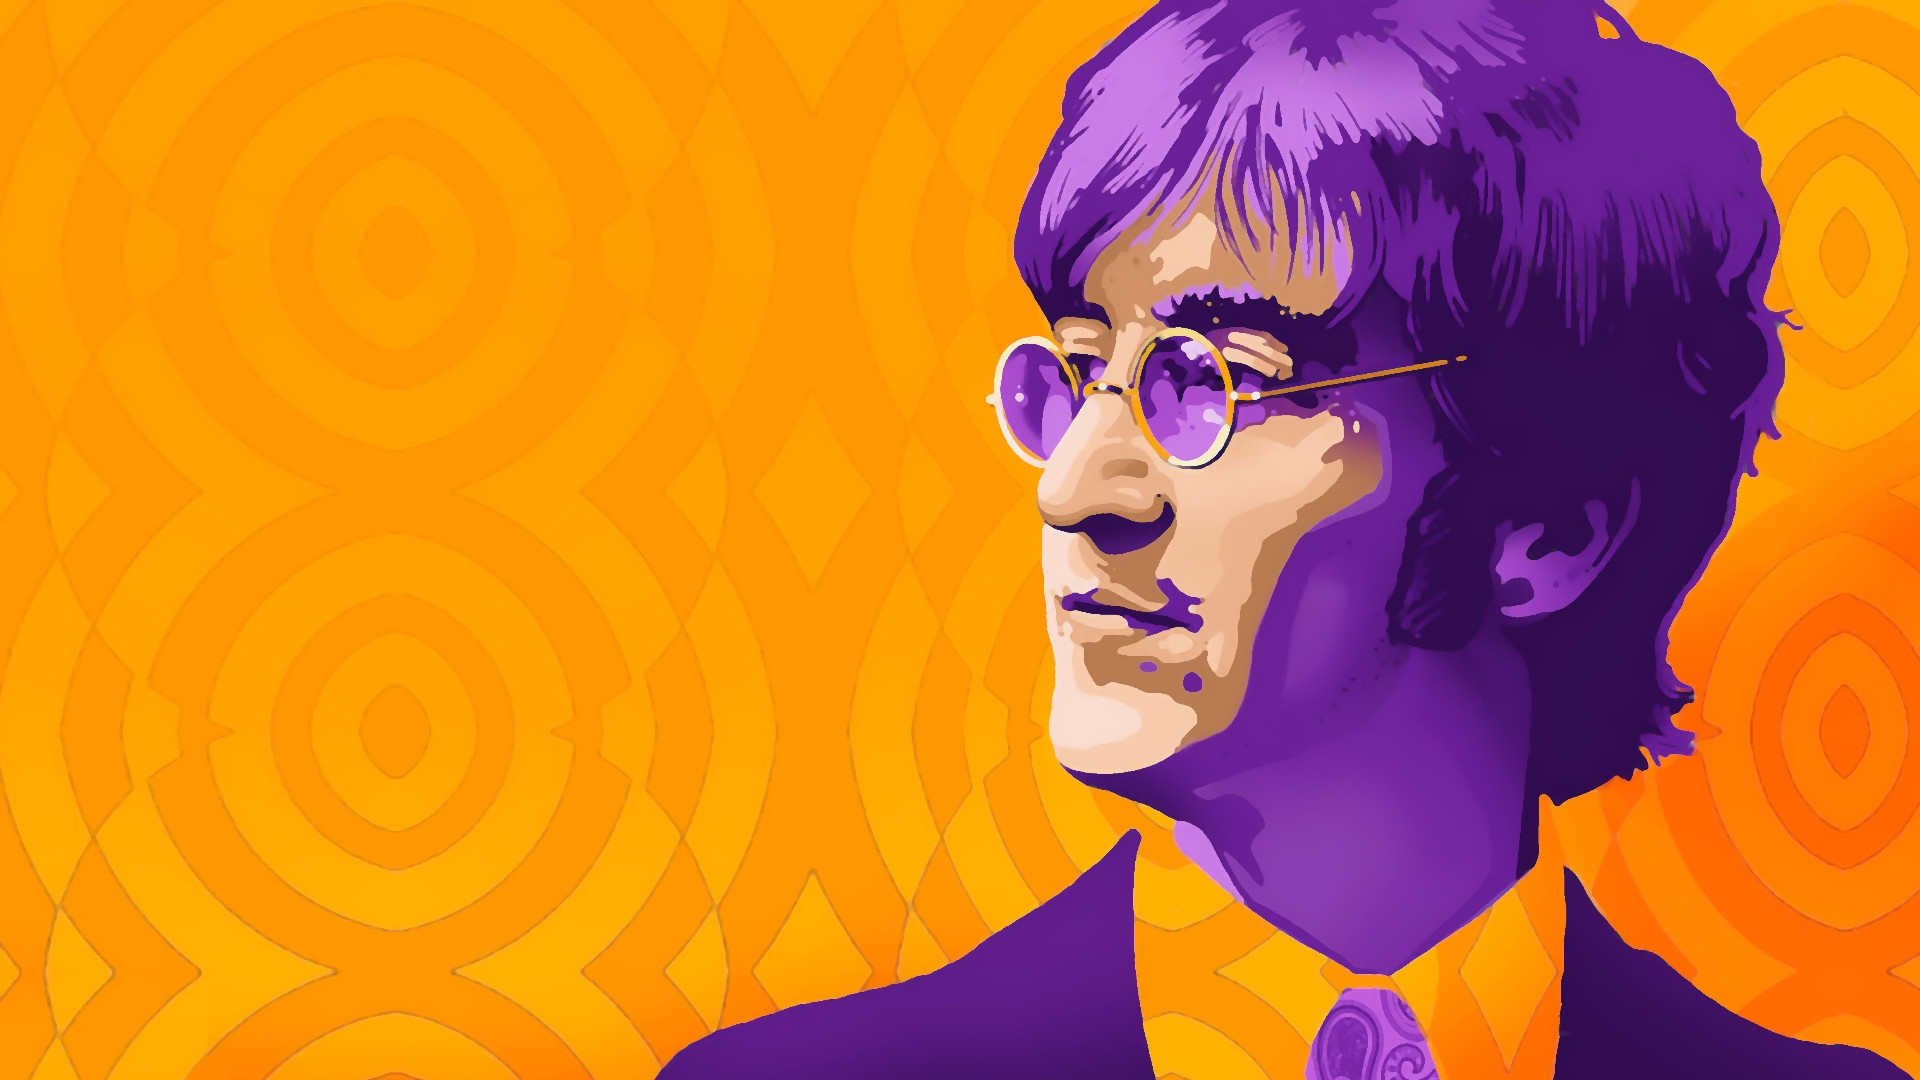 John Lennon Wallpaper Painting : beatles